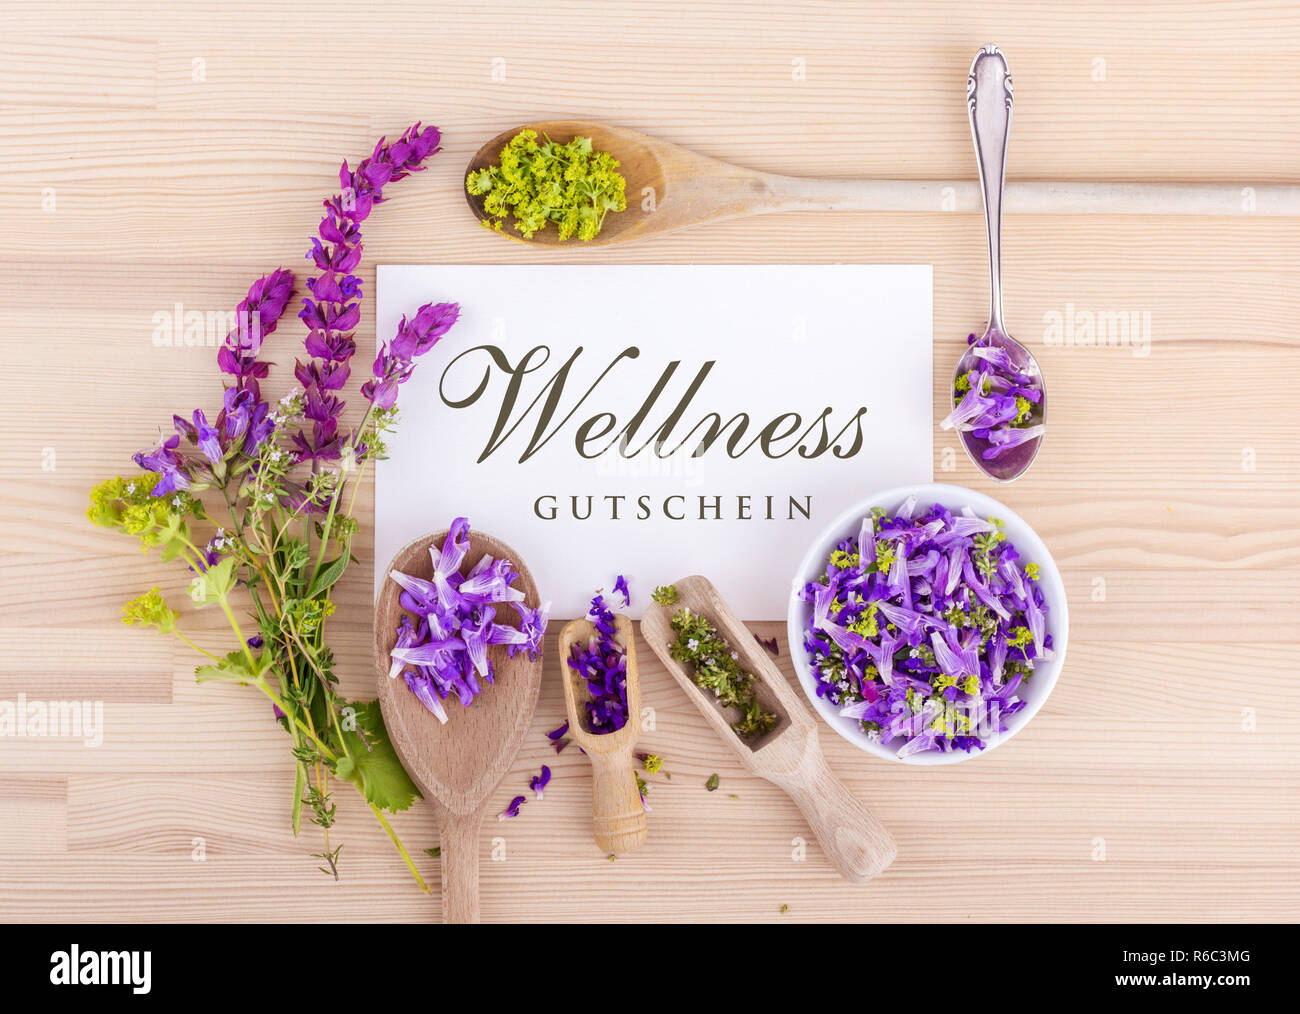 Wellness Gutschein mit Blumen von Salbei, Thymian, Frauenmantel und  deutsche Text Stockfotografie - Alamy